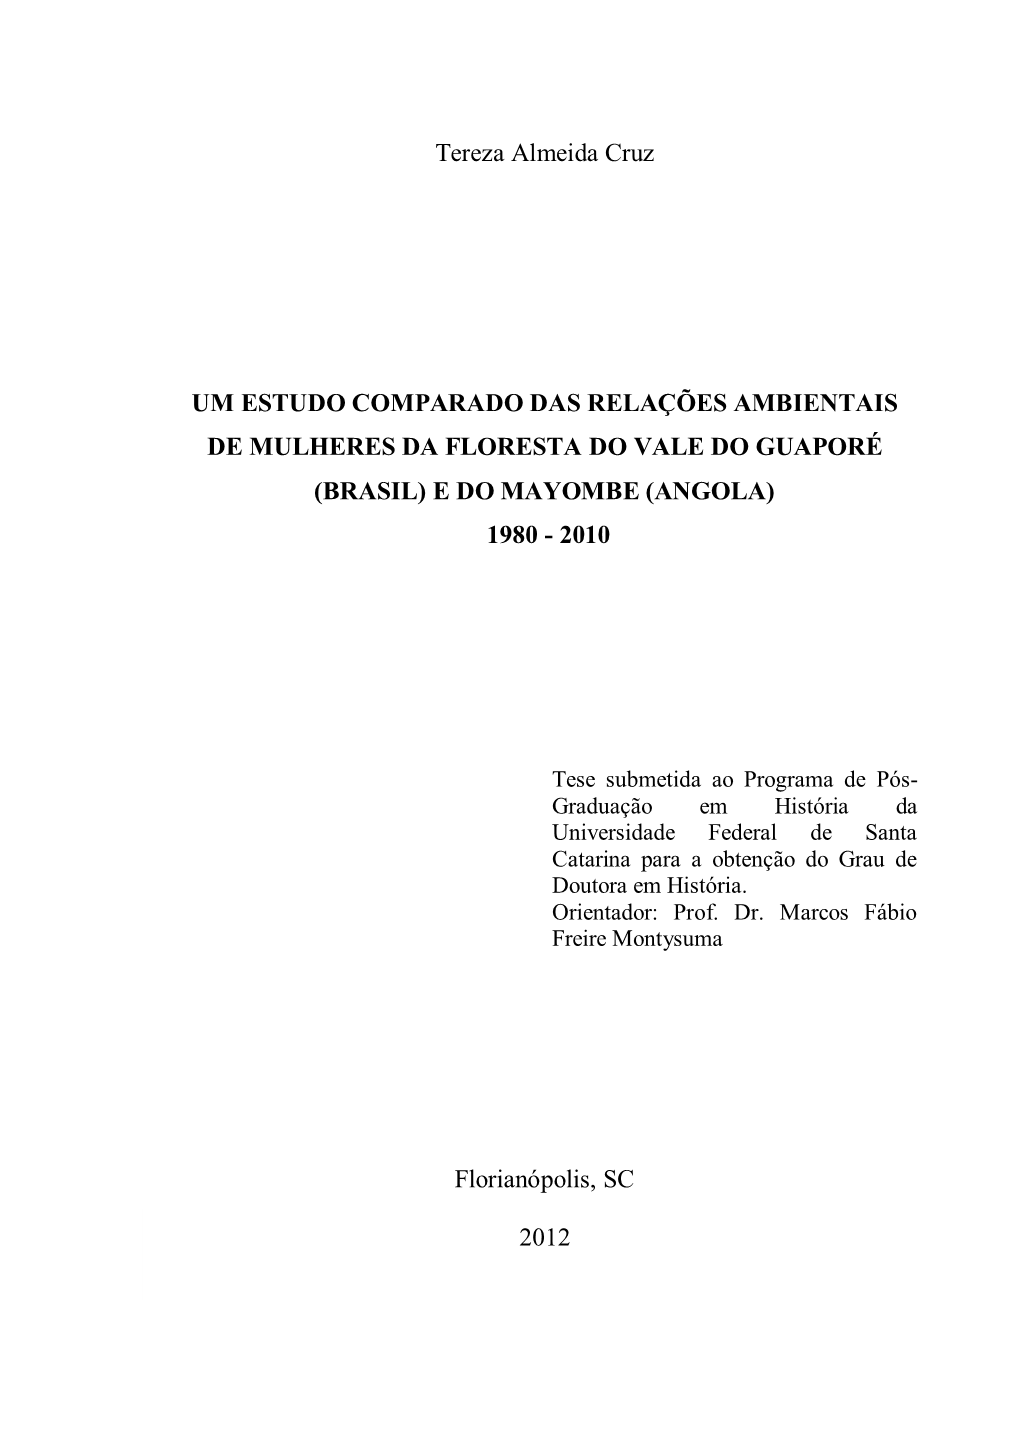 Universidade Federal De Santa Catarina Para a Obtenção Do Grau De Doutora Em História